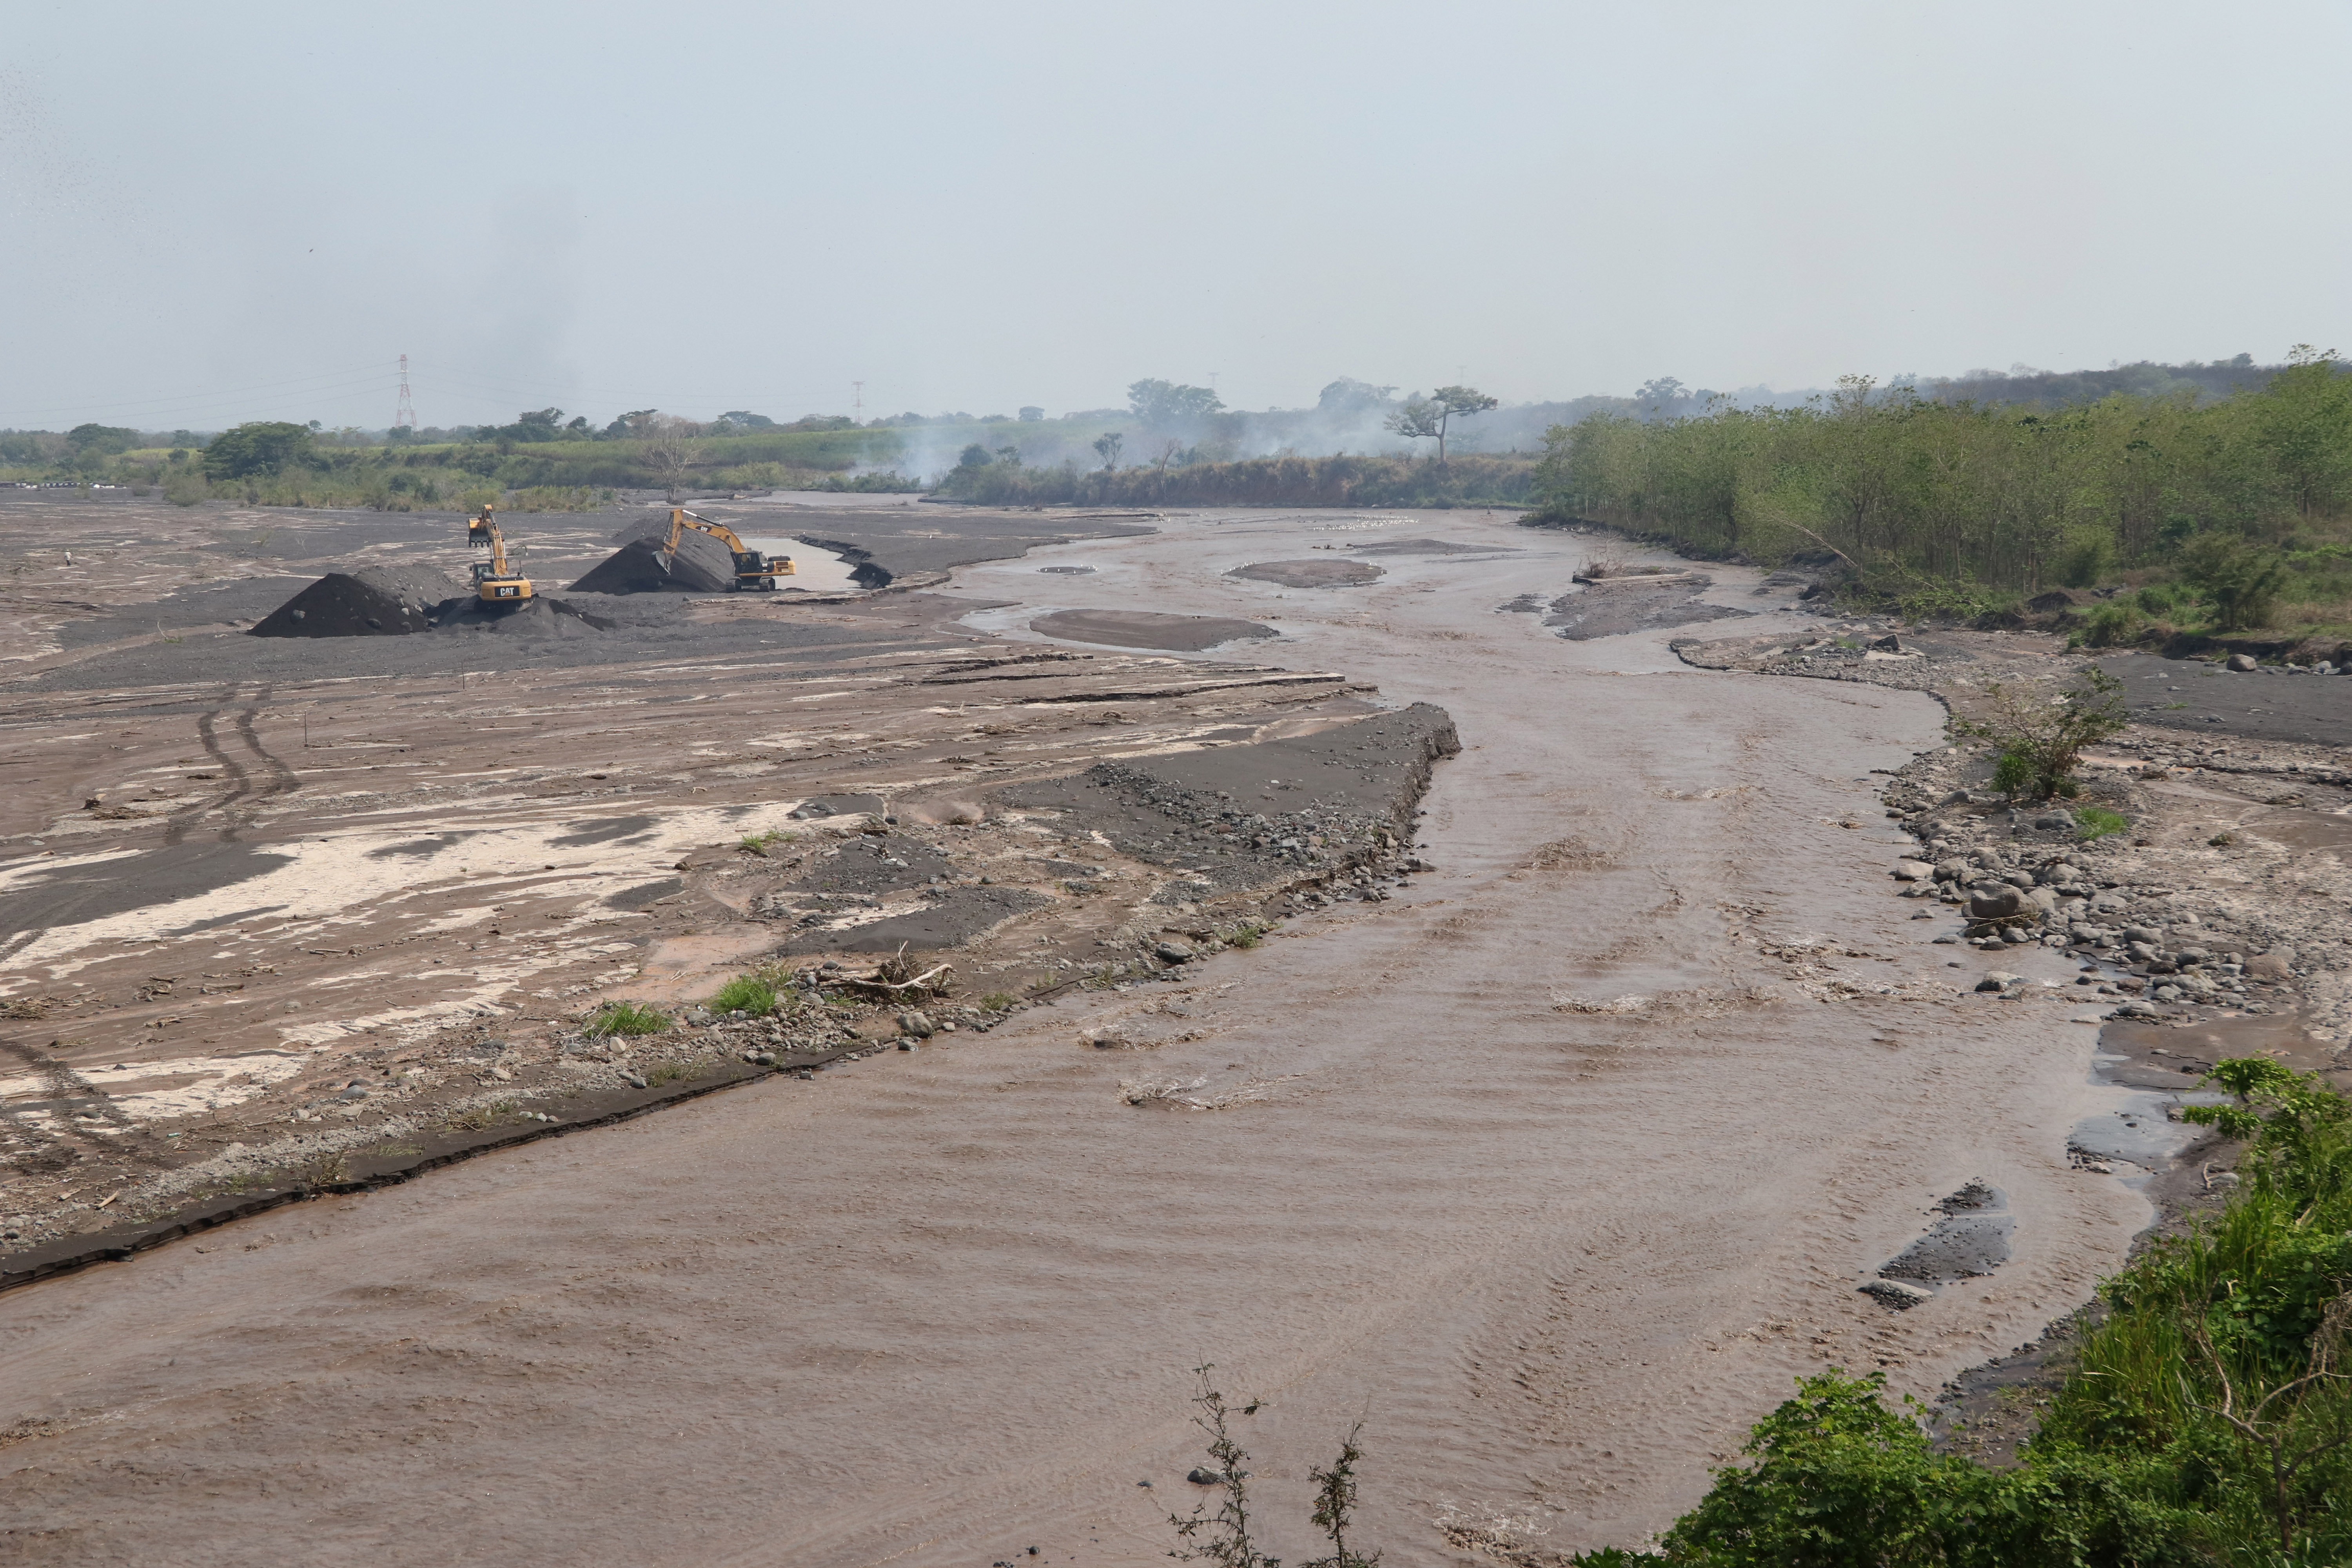 La barranca El Jute ha sido afectada con lahares lo que causa problema para vecinos de comunidades cercanas al volcán de Fuego. (Foto Prensa Libre: Carlos Paredes)